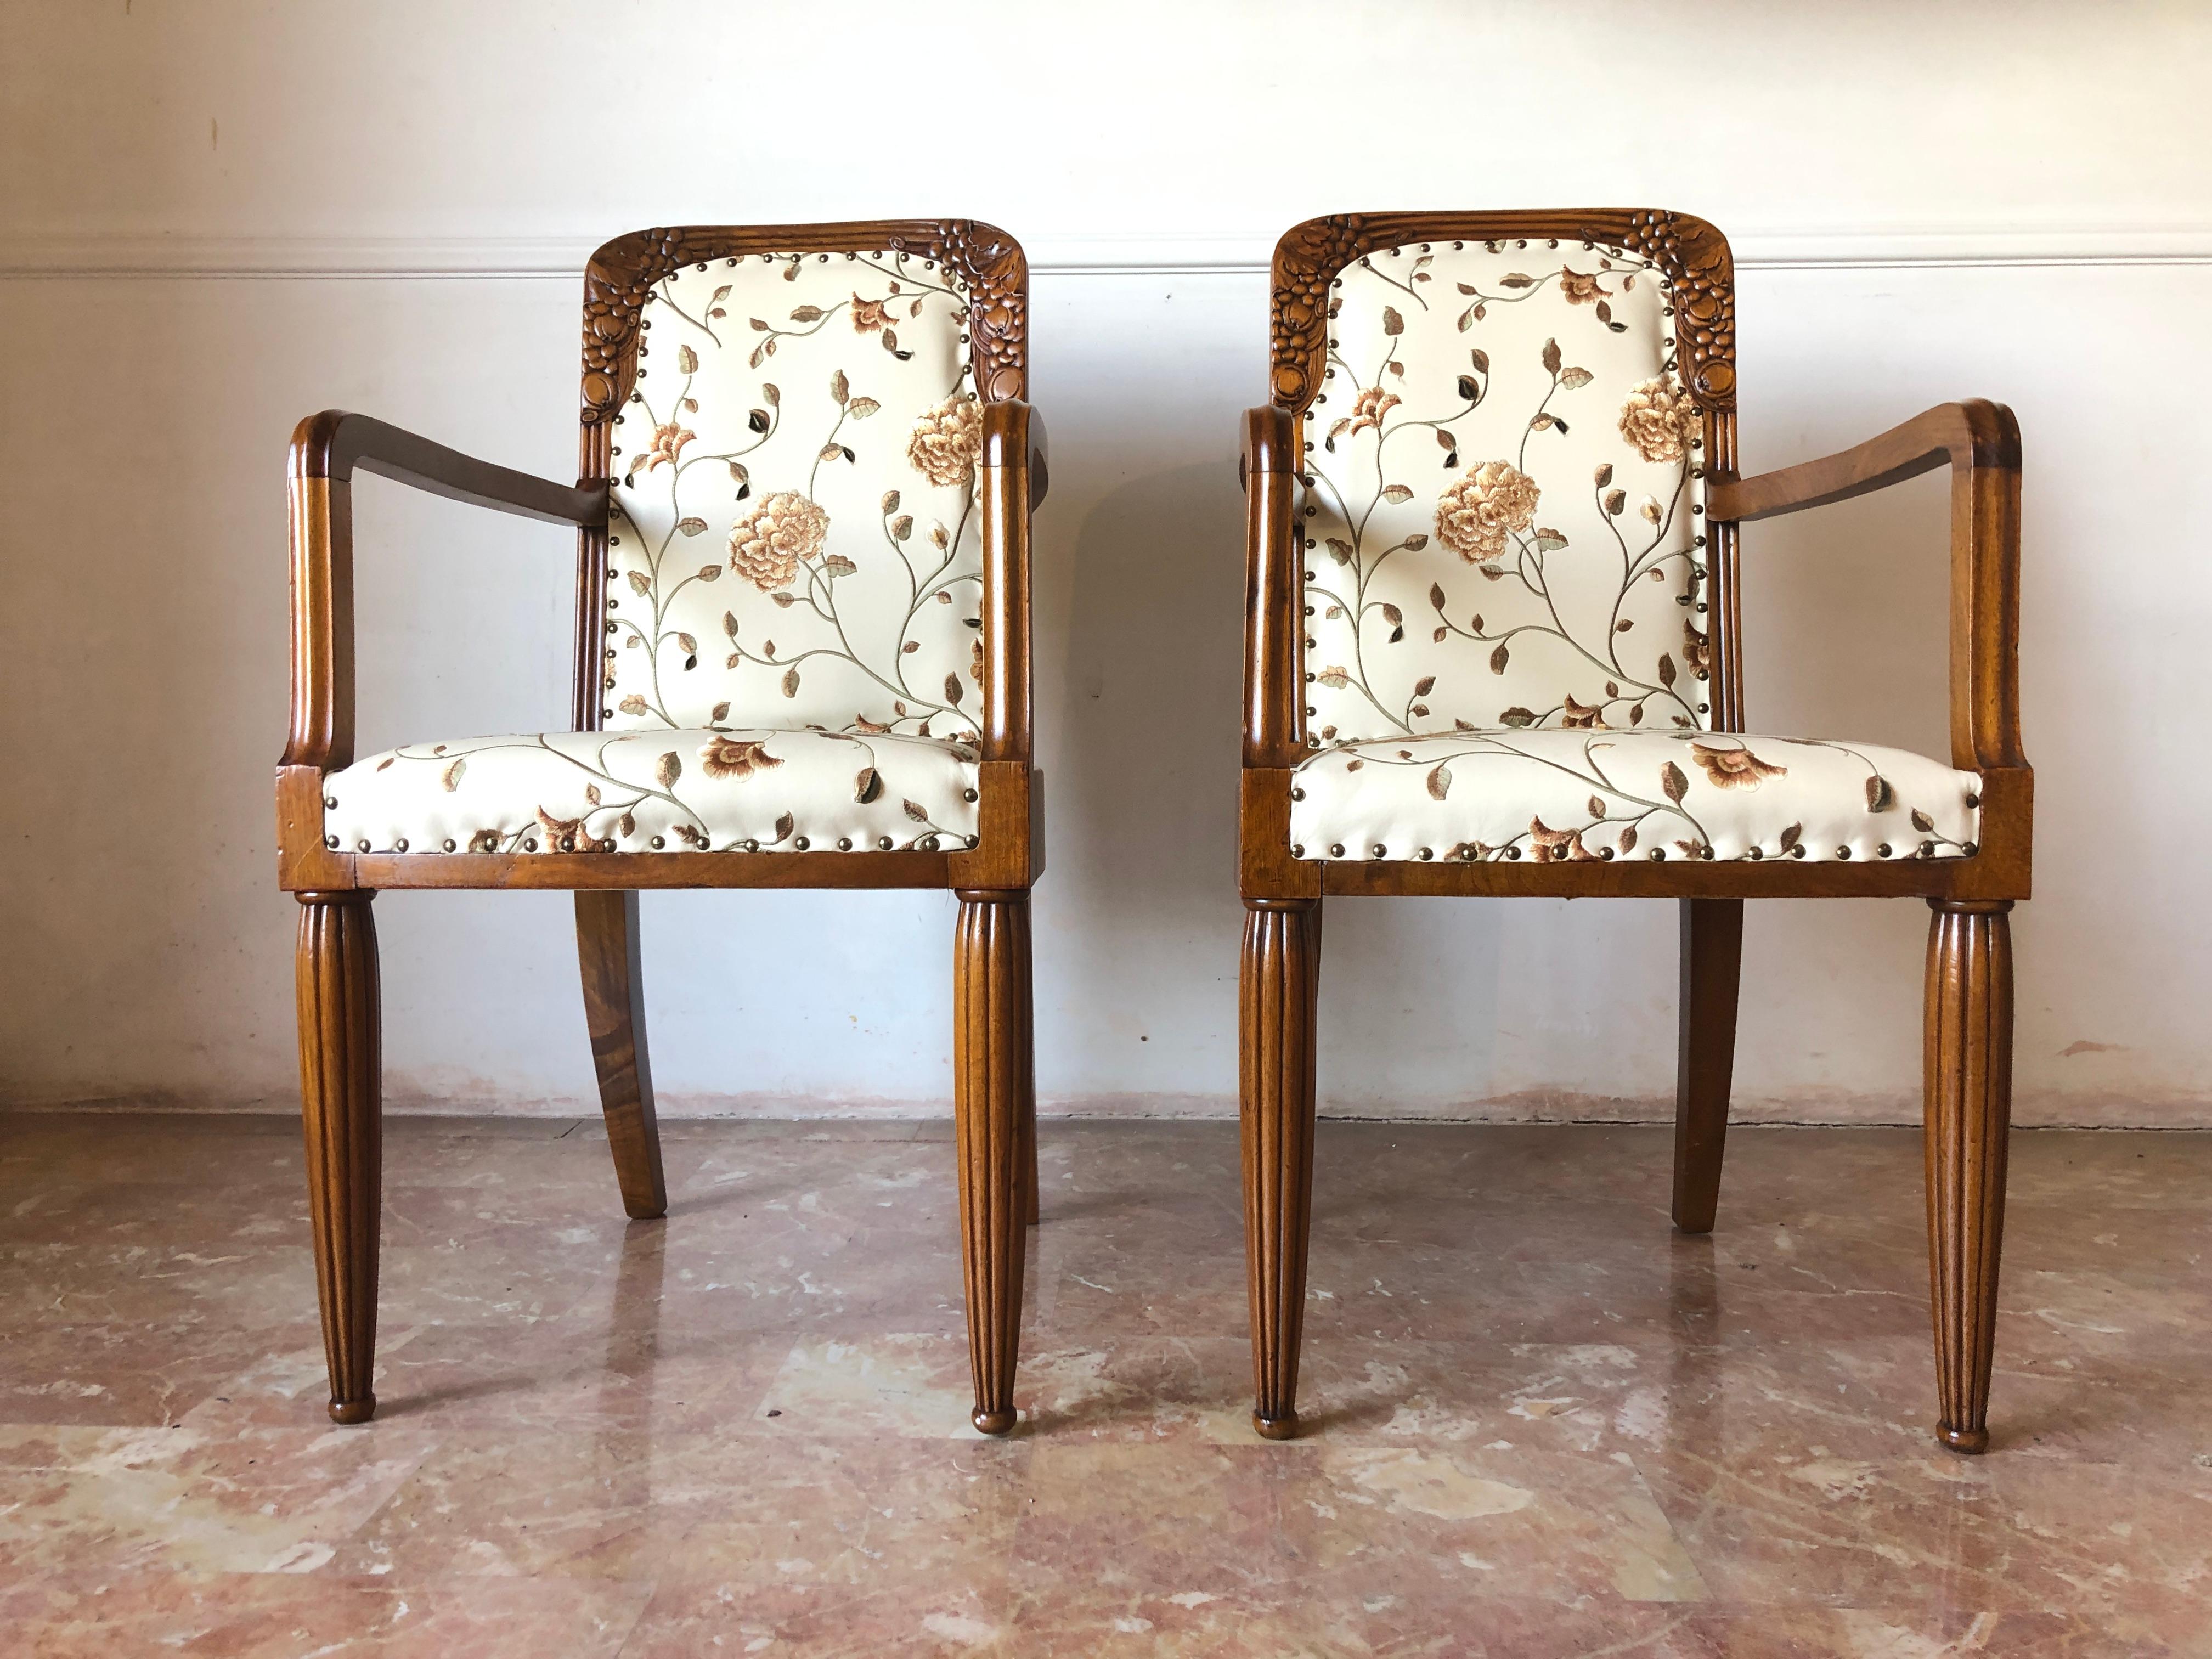 Schöne französische Sessel aus Nussbaum mit dekorativen Intarsien auf den Rückenlehnen, gerillte Beine, neue Polsterung aus Kunstleder mit geprägten Pflanzenmotiven.